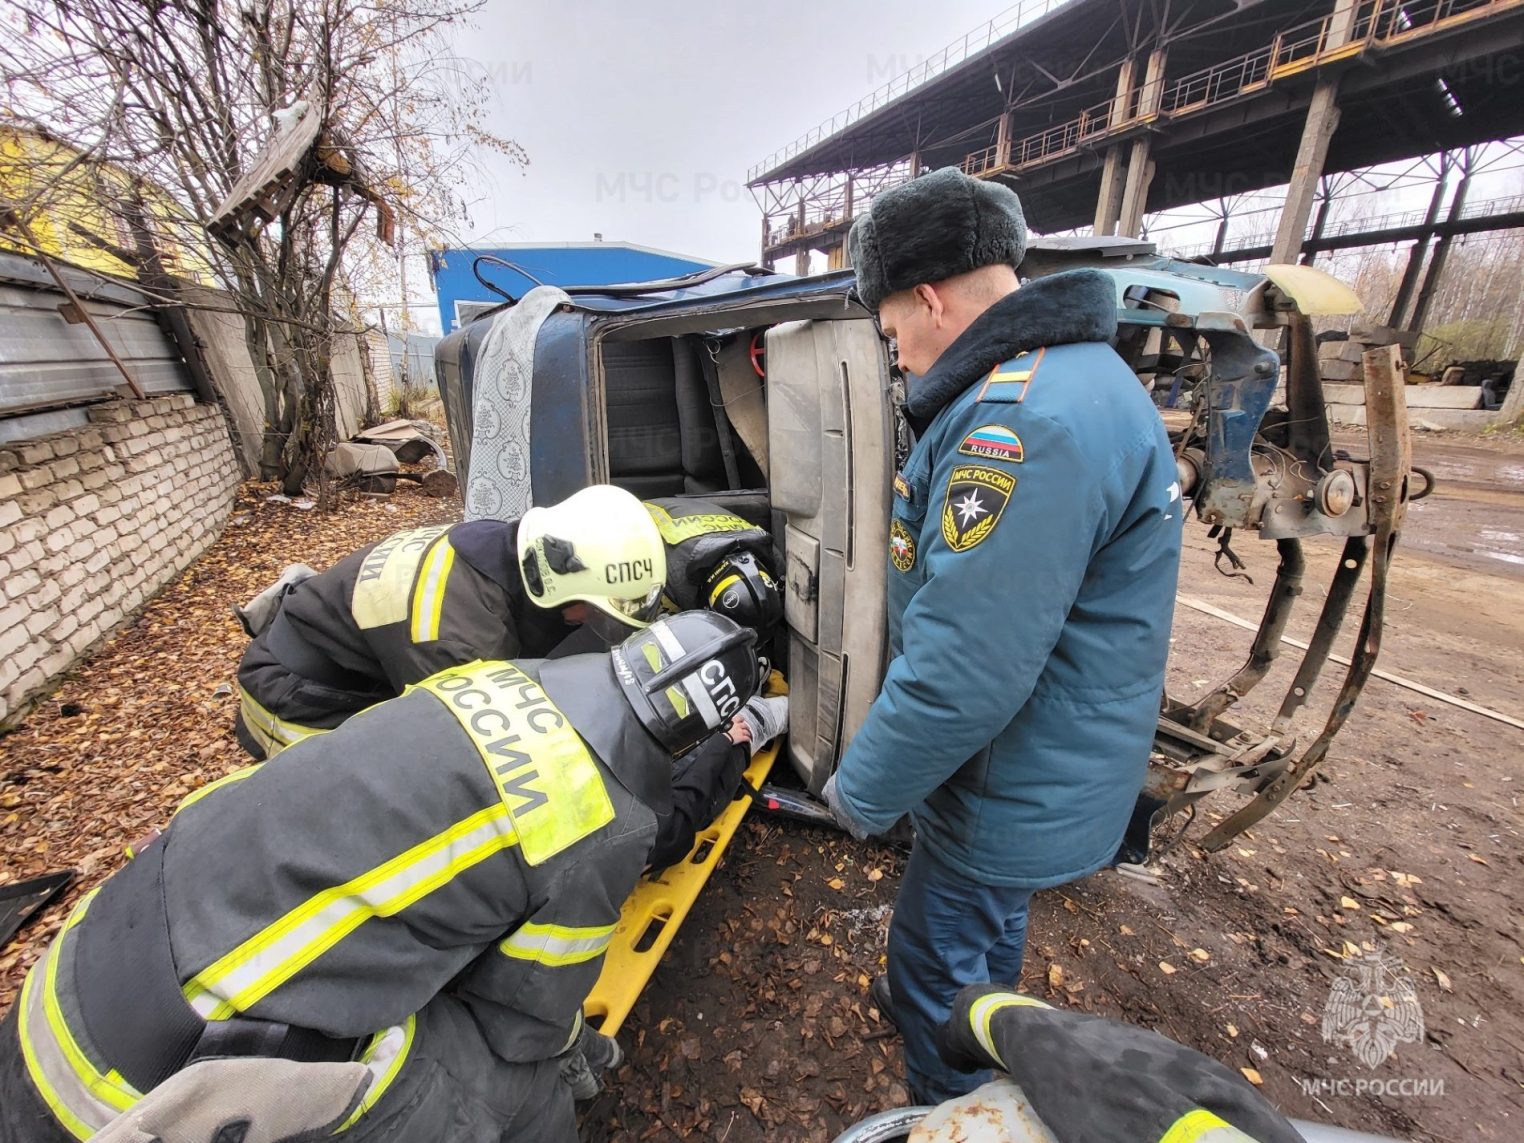 Костромские спасатели вытащили с того света пострадавших в ДТП